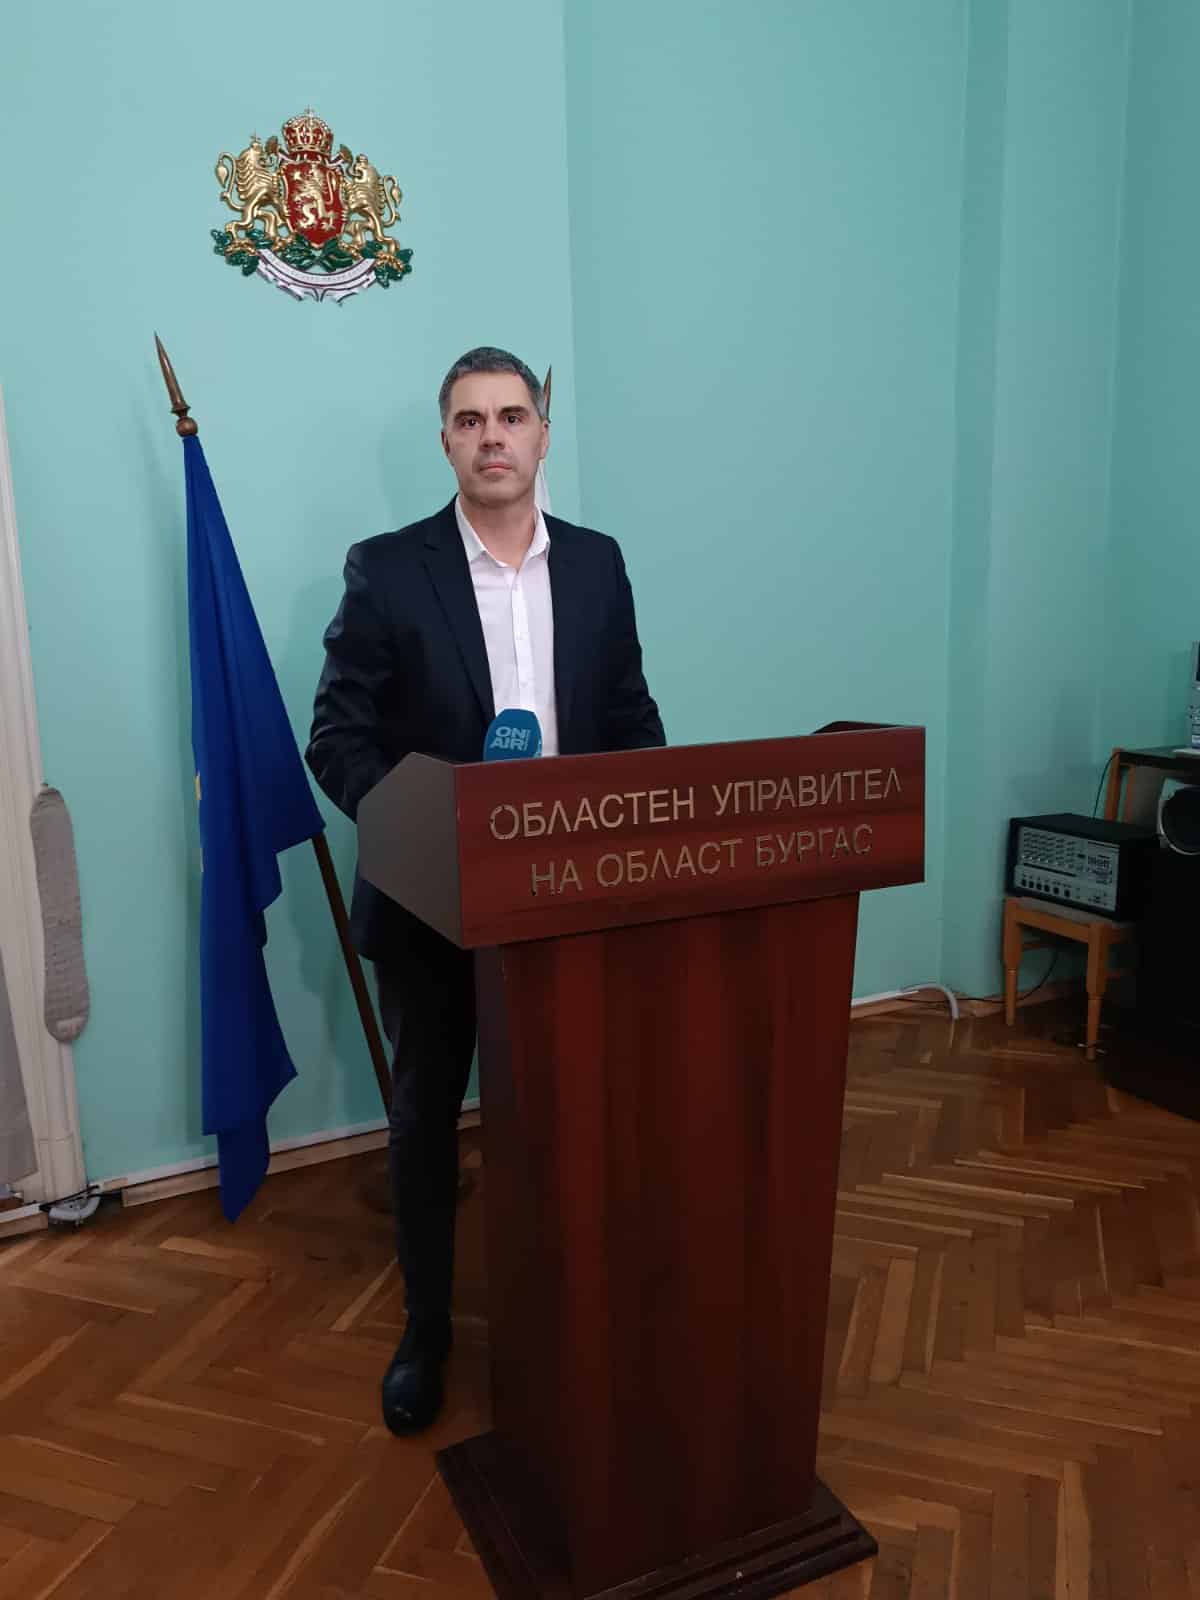 Областният управител на Област Бургас Пламен Янев свиква консултации между